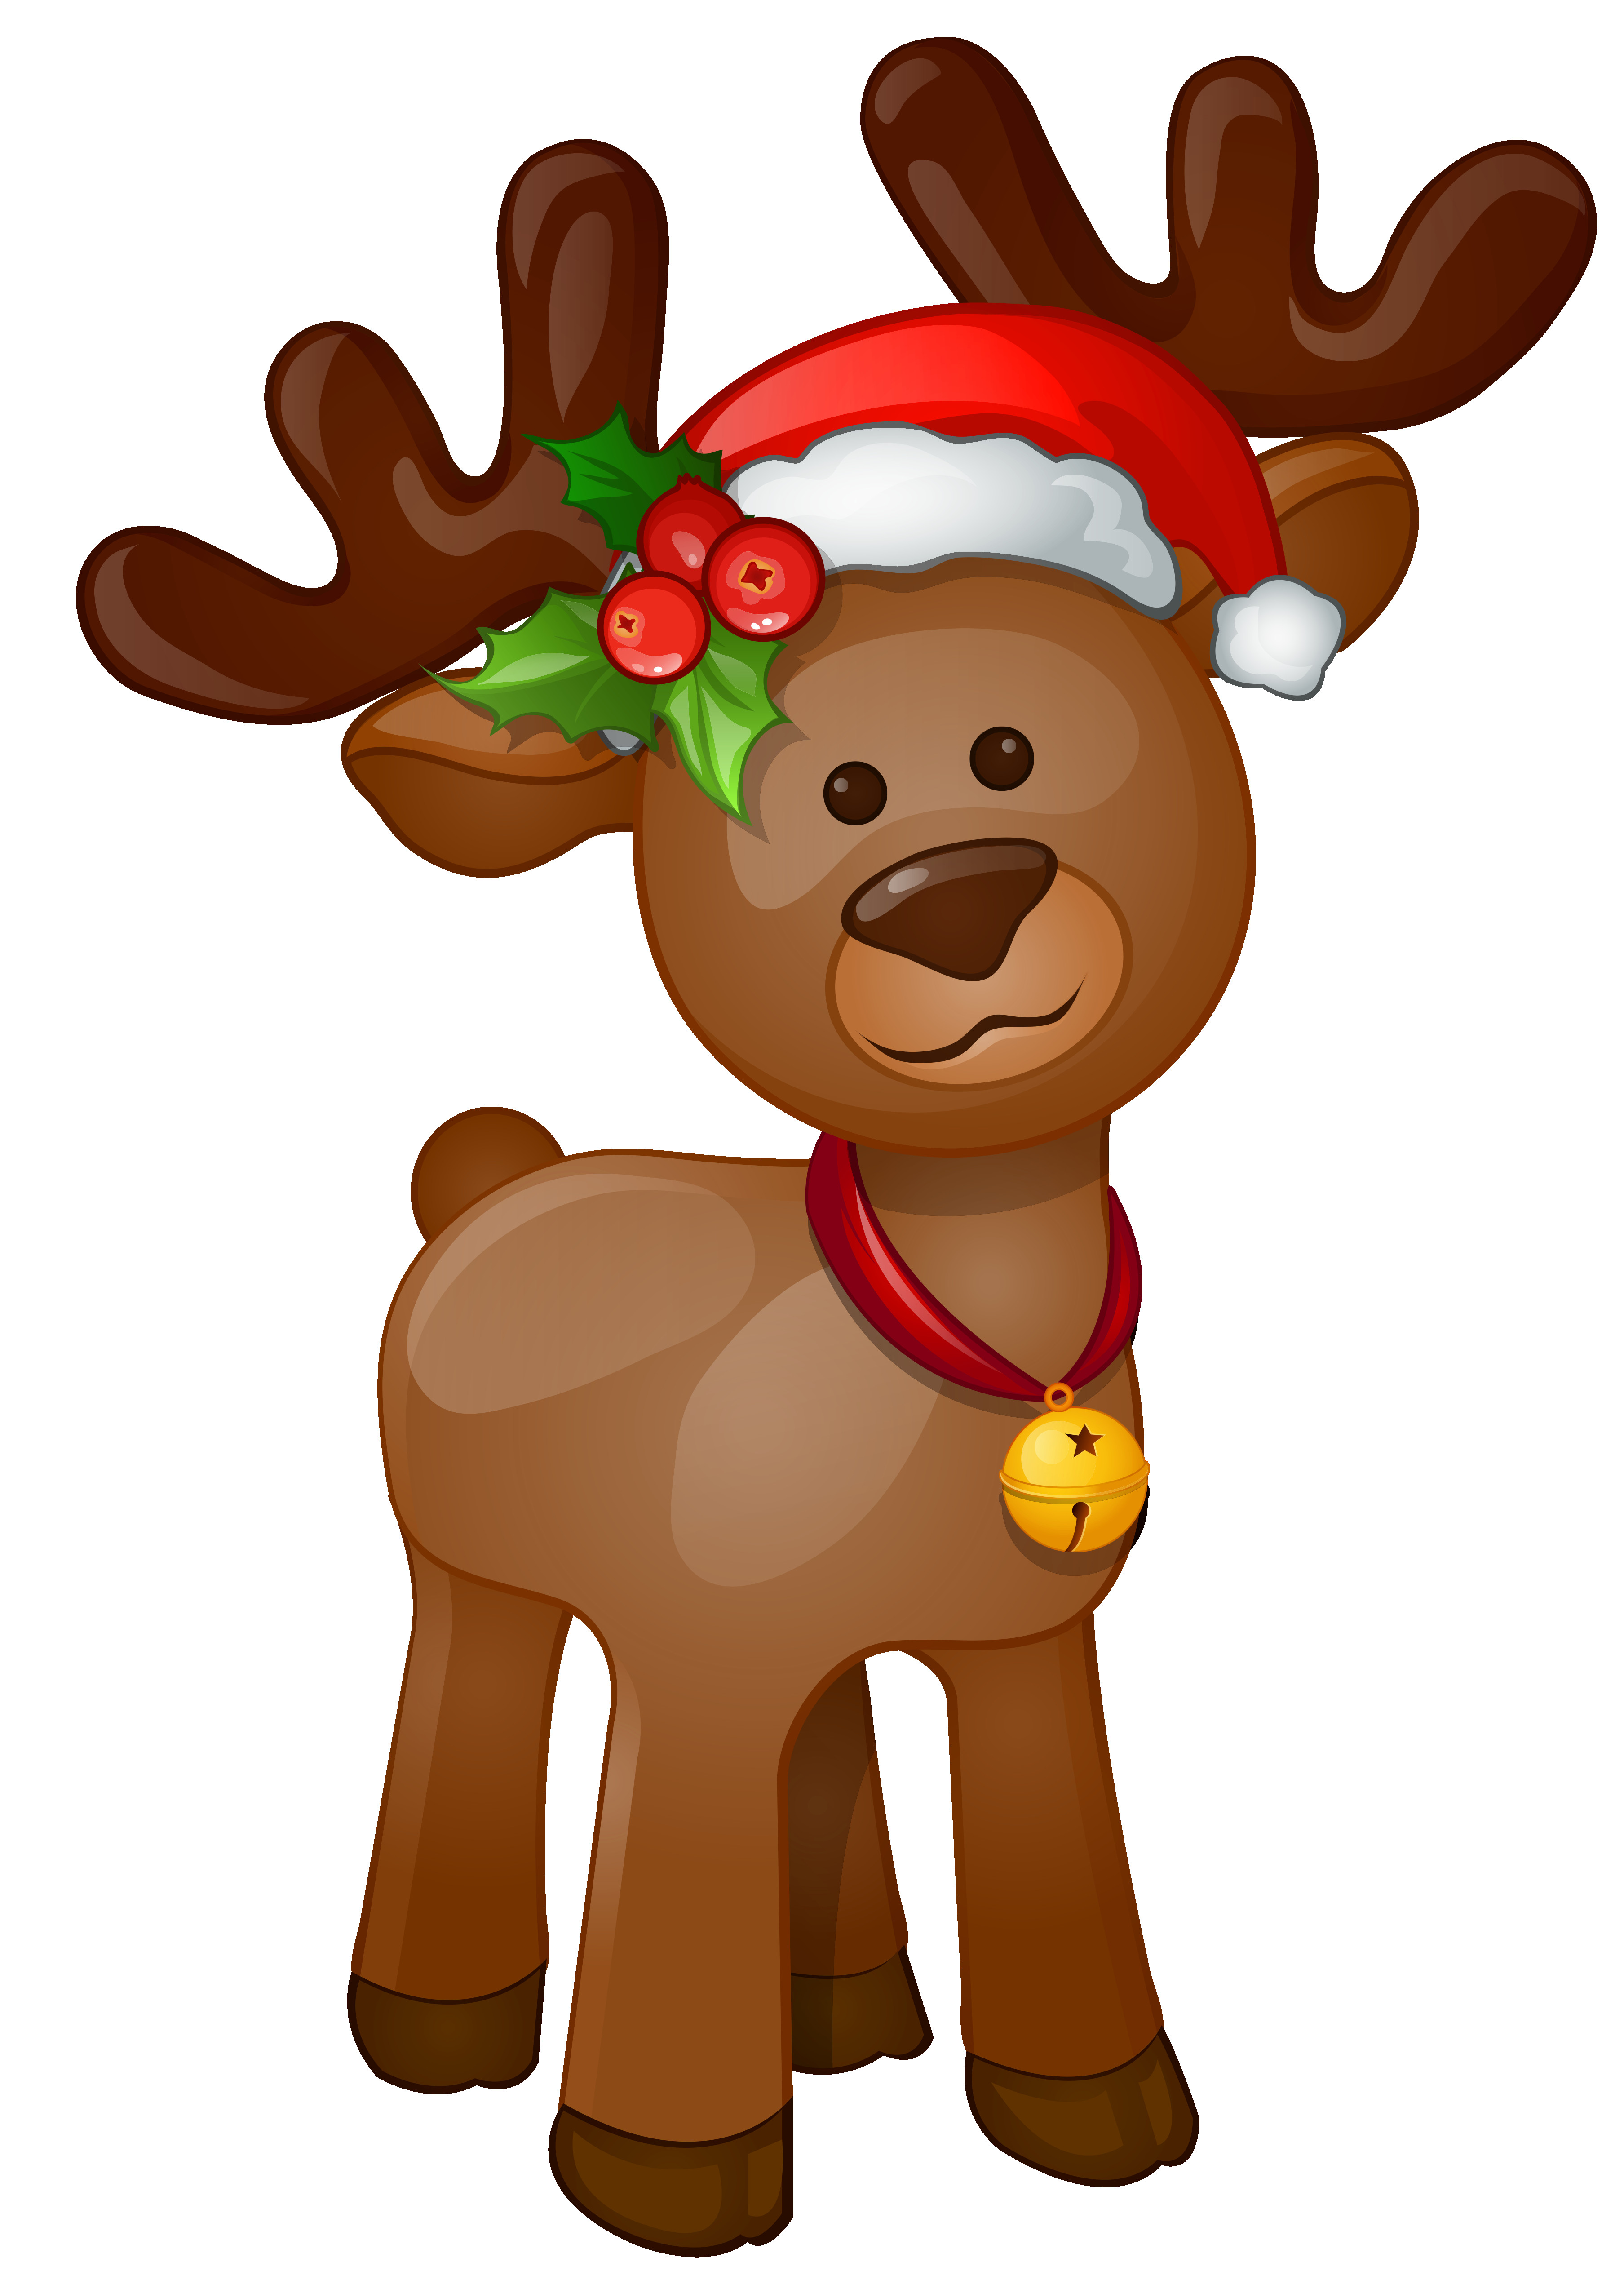 Reindeer Clipart at GetDrawings | Free download